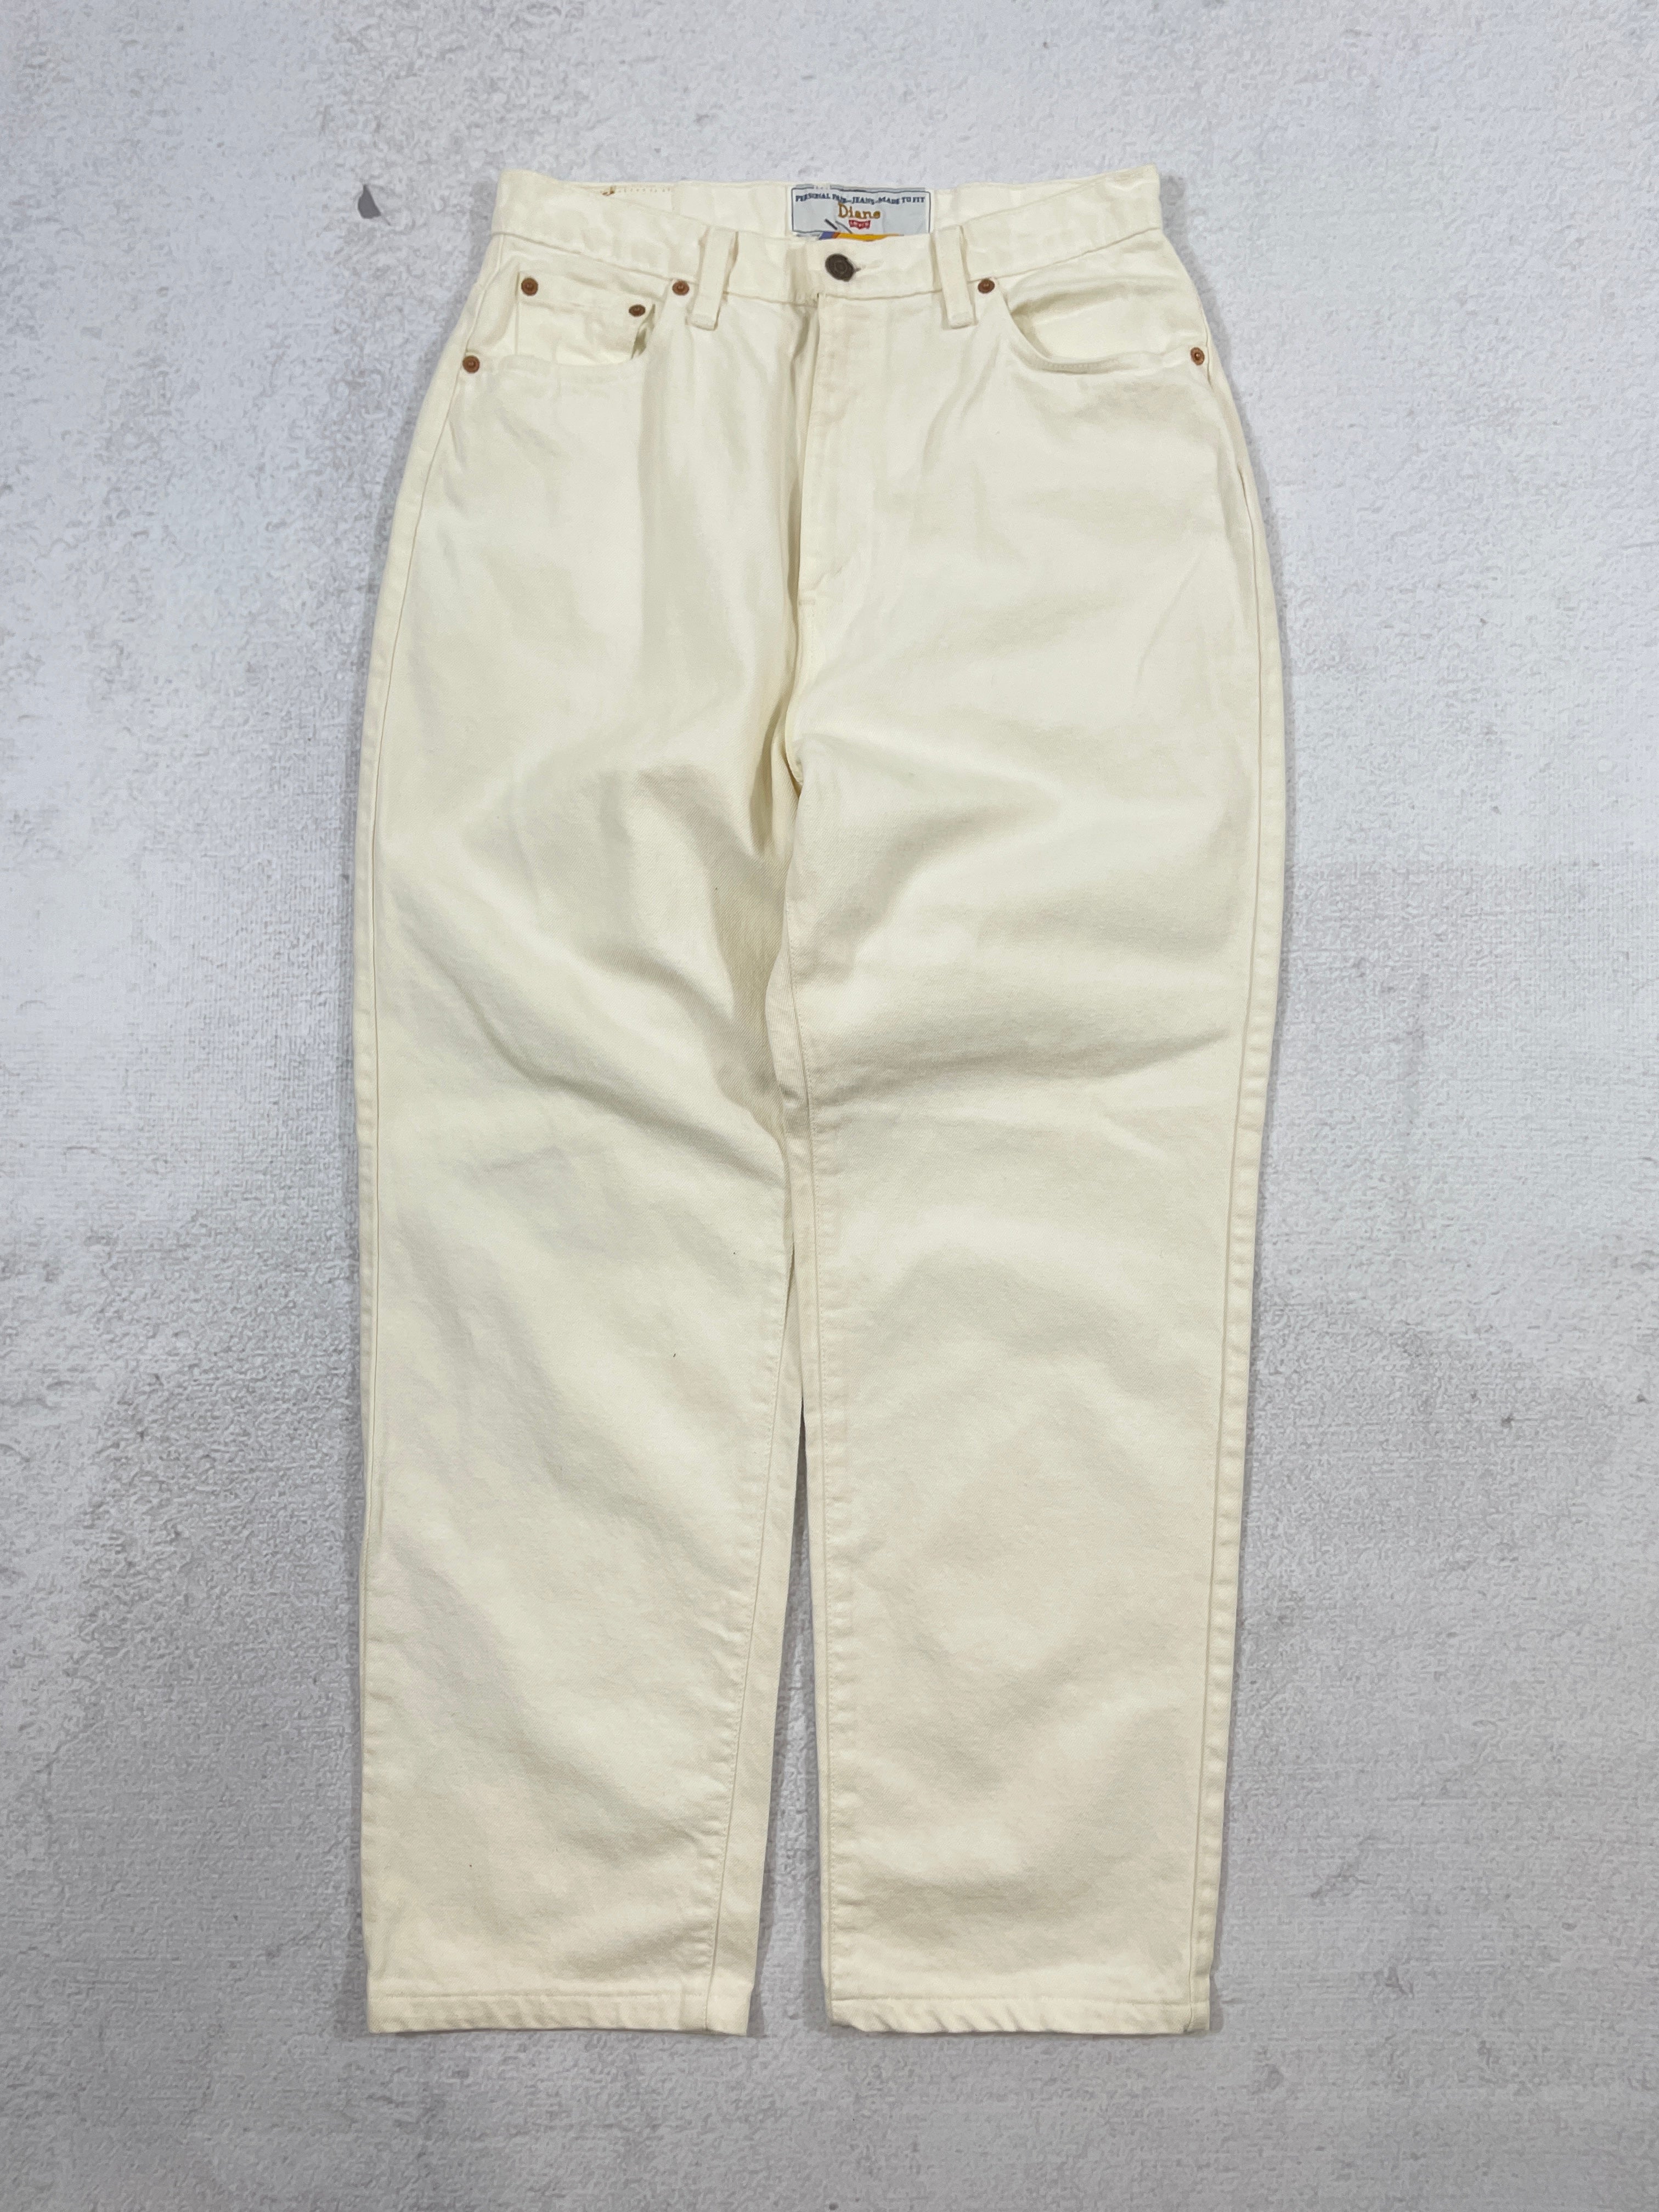 Vintage Levis Jeans - Women's 31Wx30L